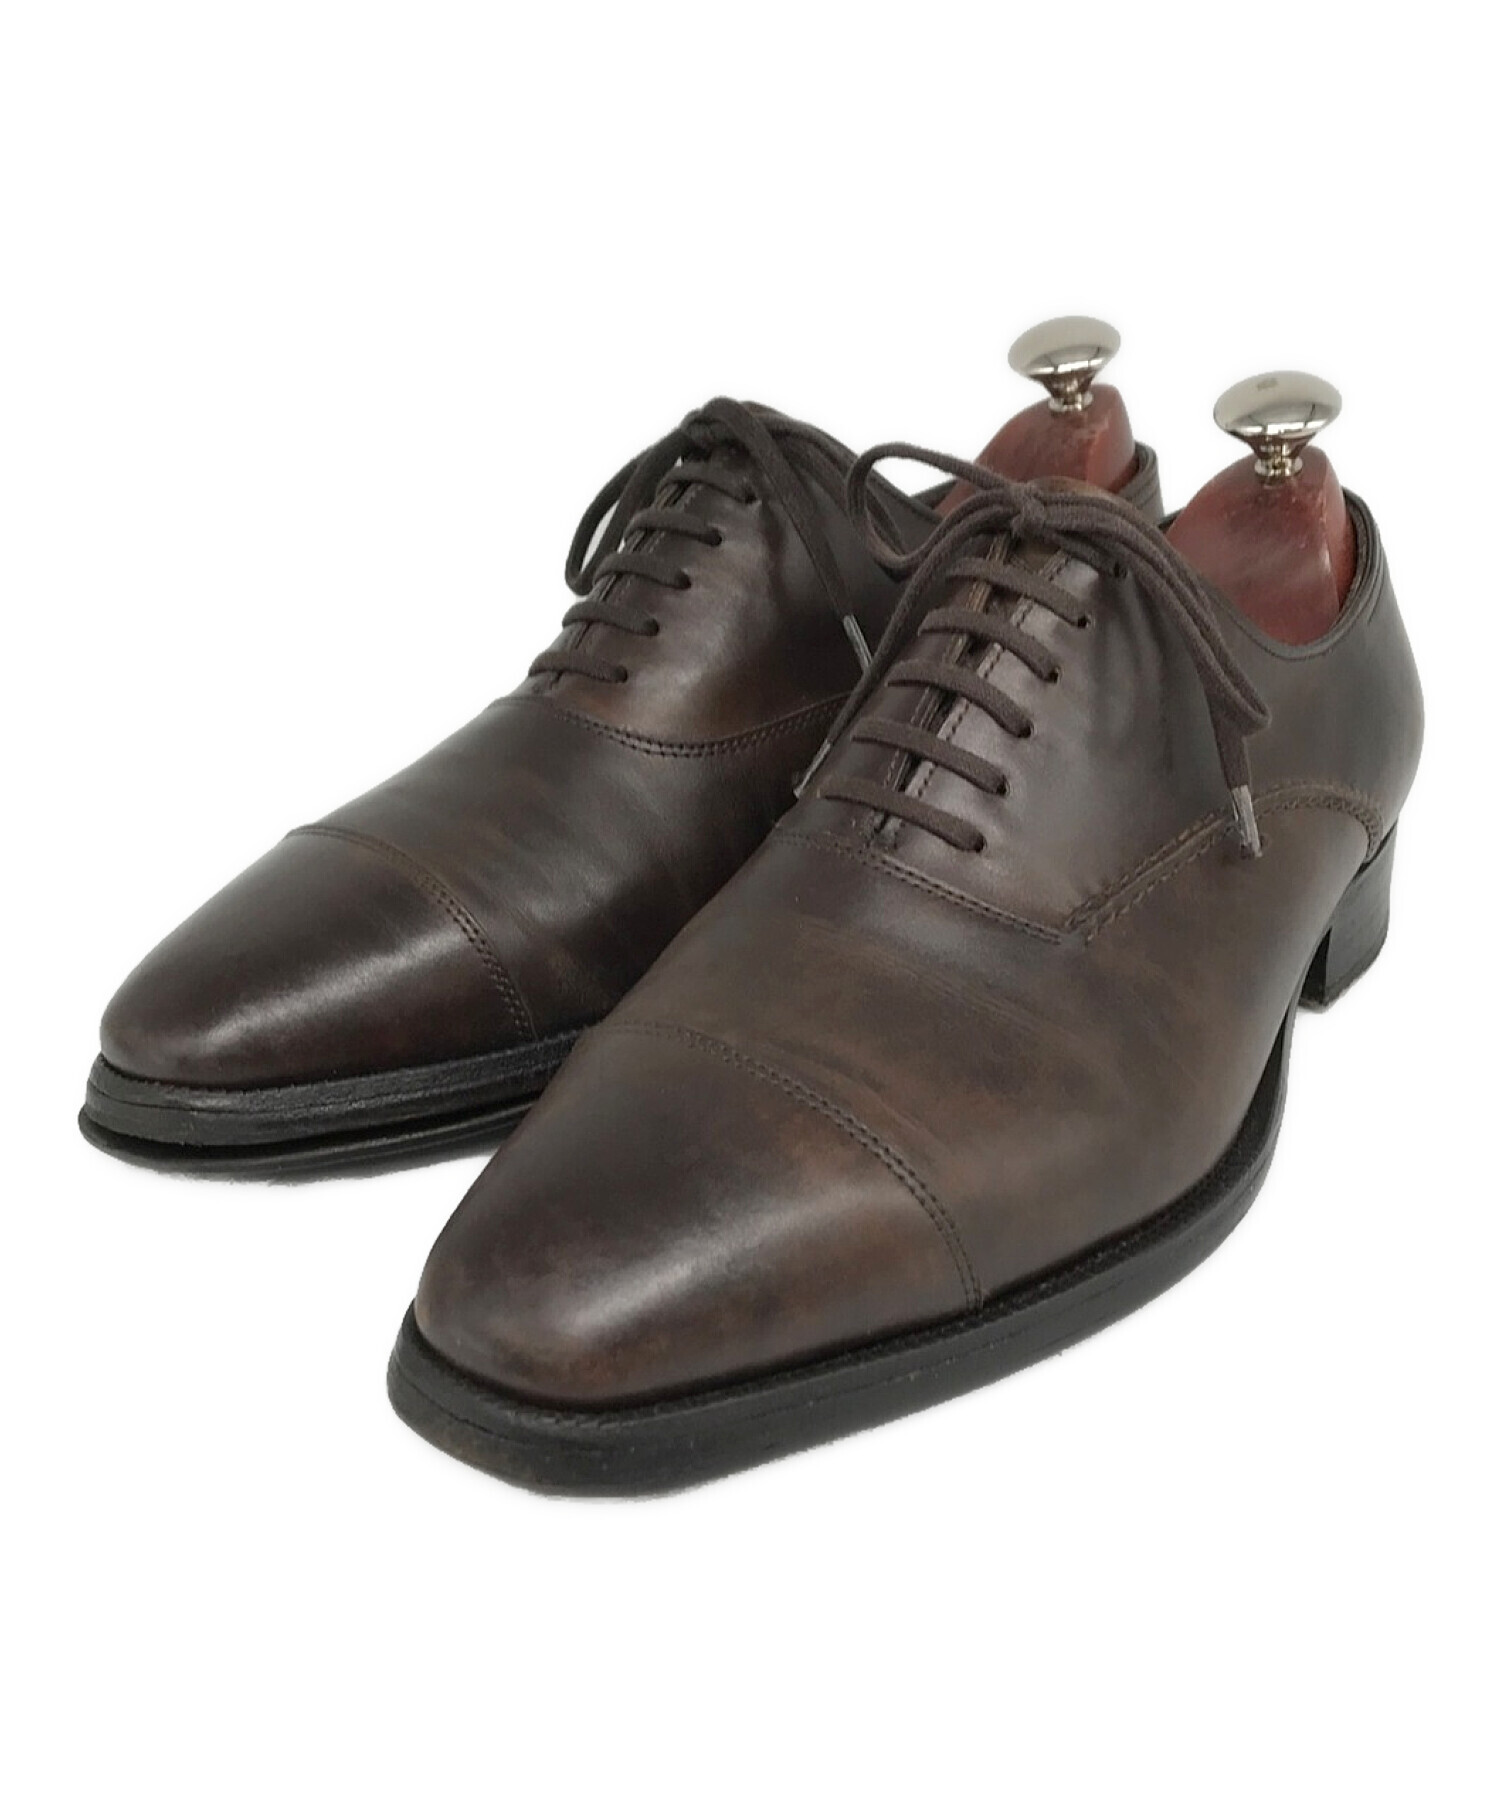 ジョンロブ JOHN LOBB レザーシューズ STAFFORD スタッフォード オックスフォード 革靴 メンズ 10EE(28.5cm相当) ブラック